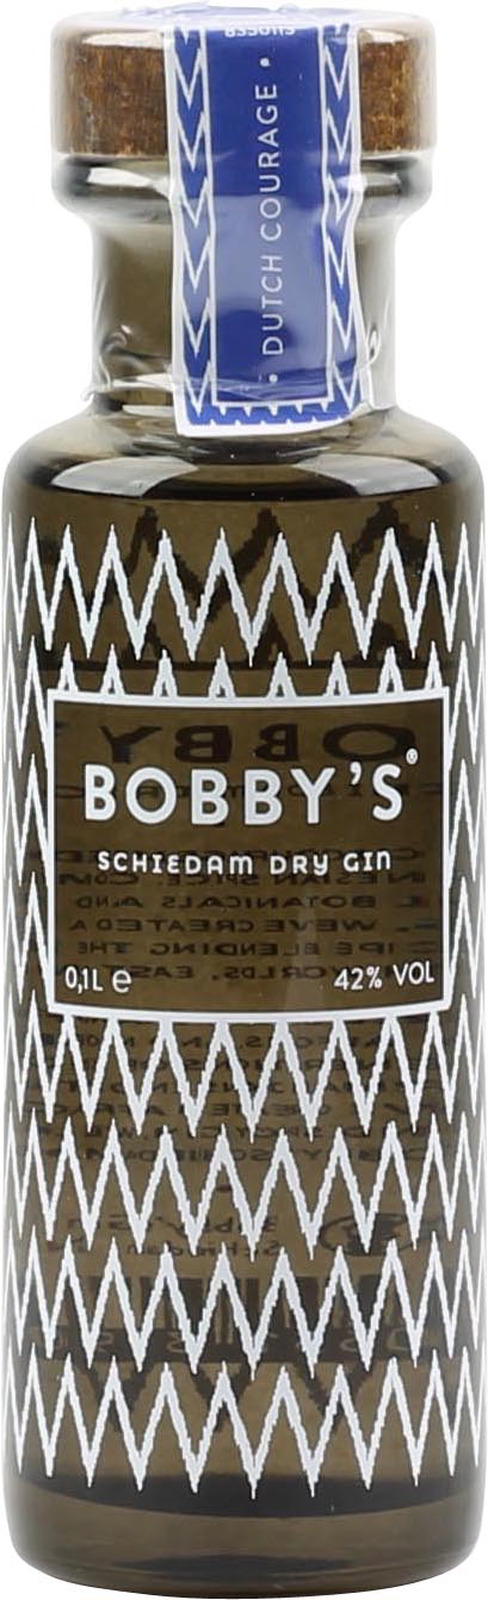 Bobbys Gin Mini Vol., 42 0,1 zum Liter Probieren 